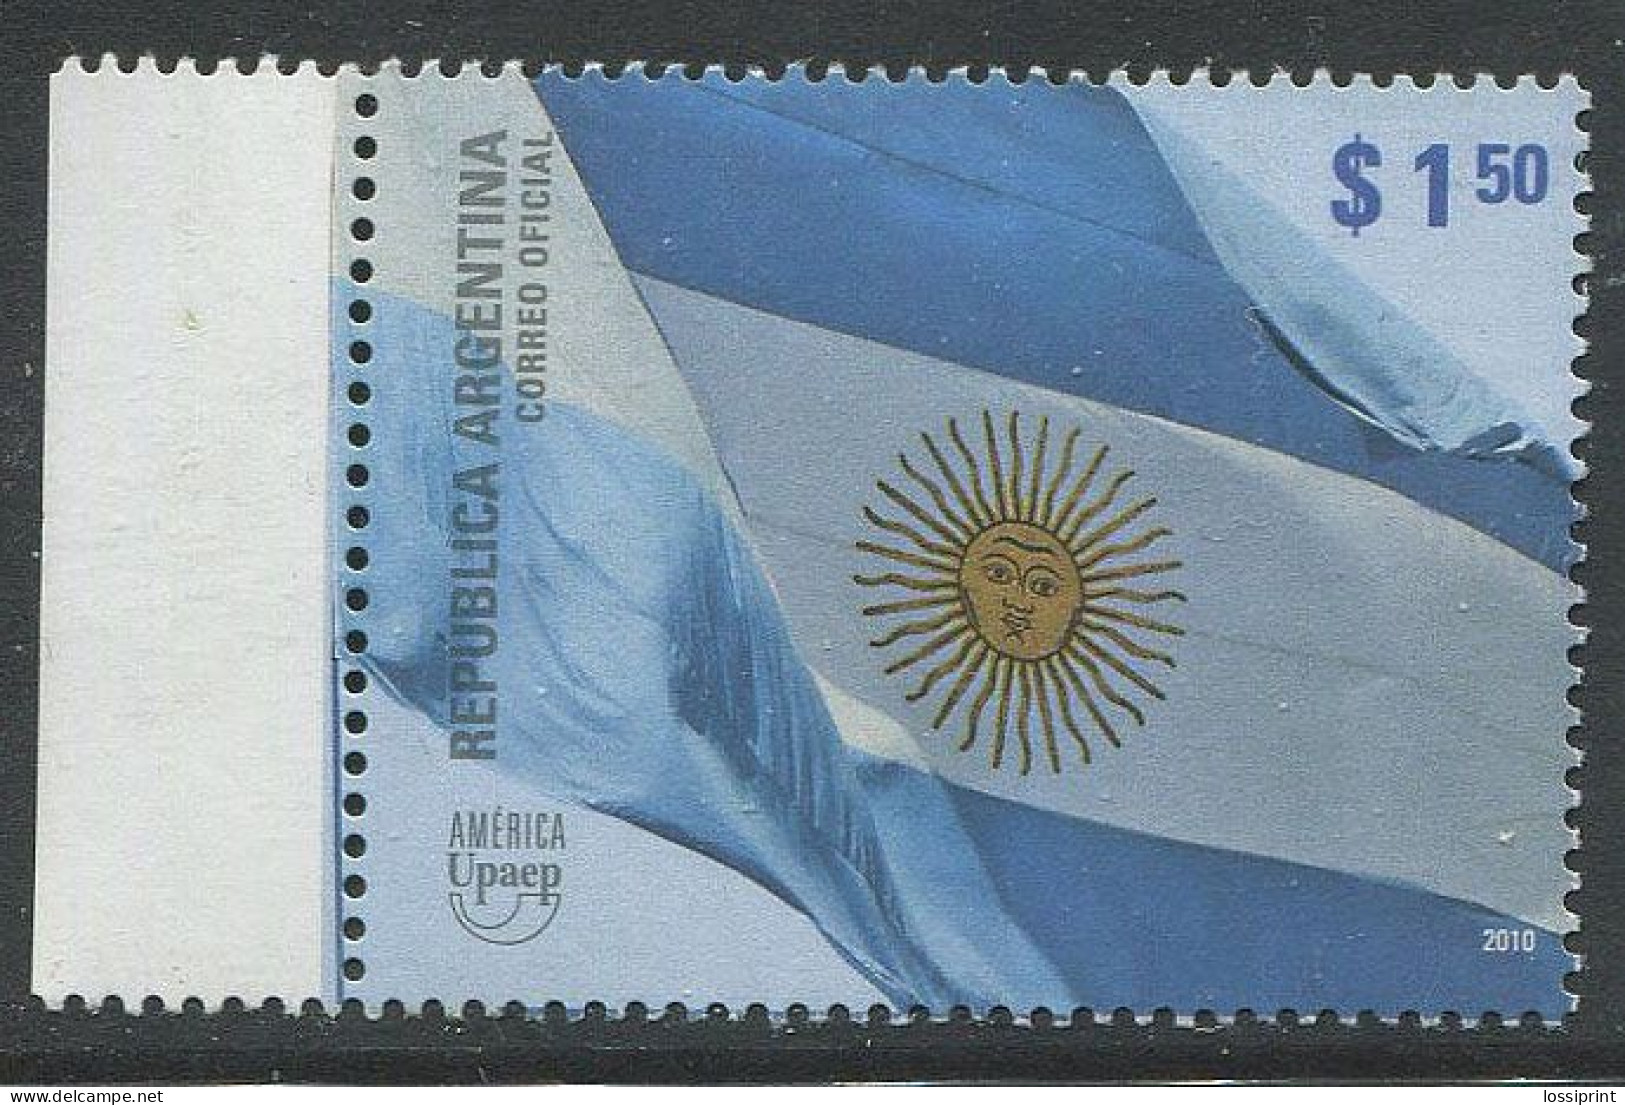 Argentina:Unused Stamp America UPAEP, 2010, MNH - Unused Stamps